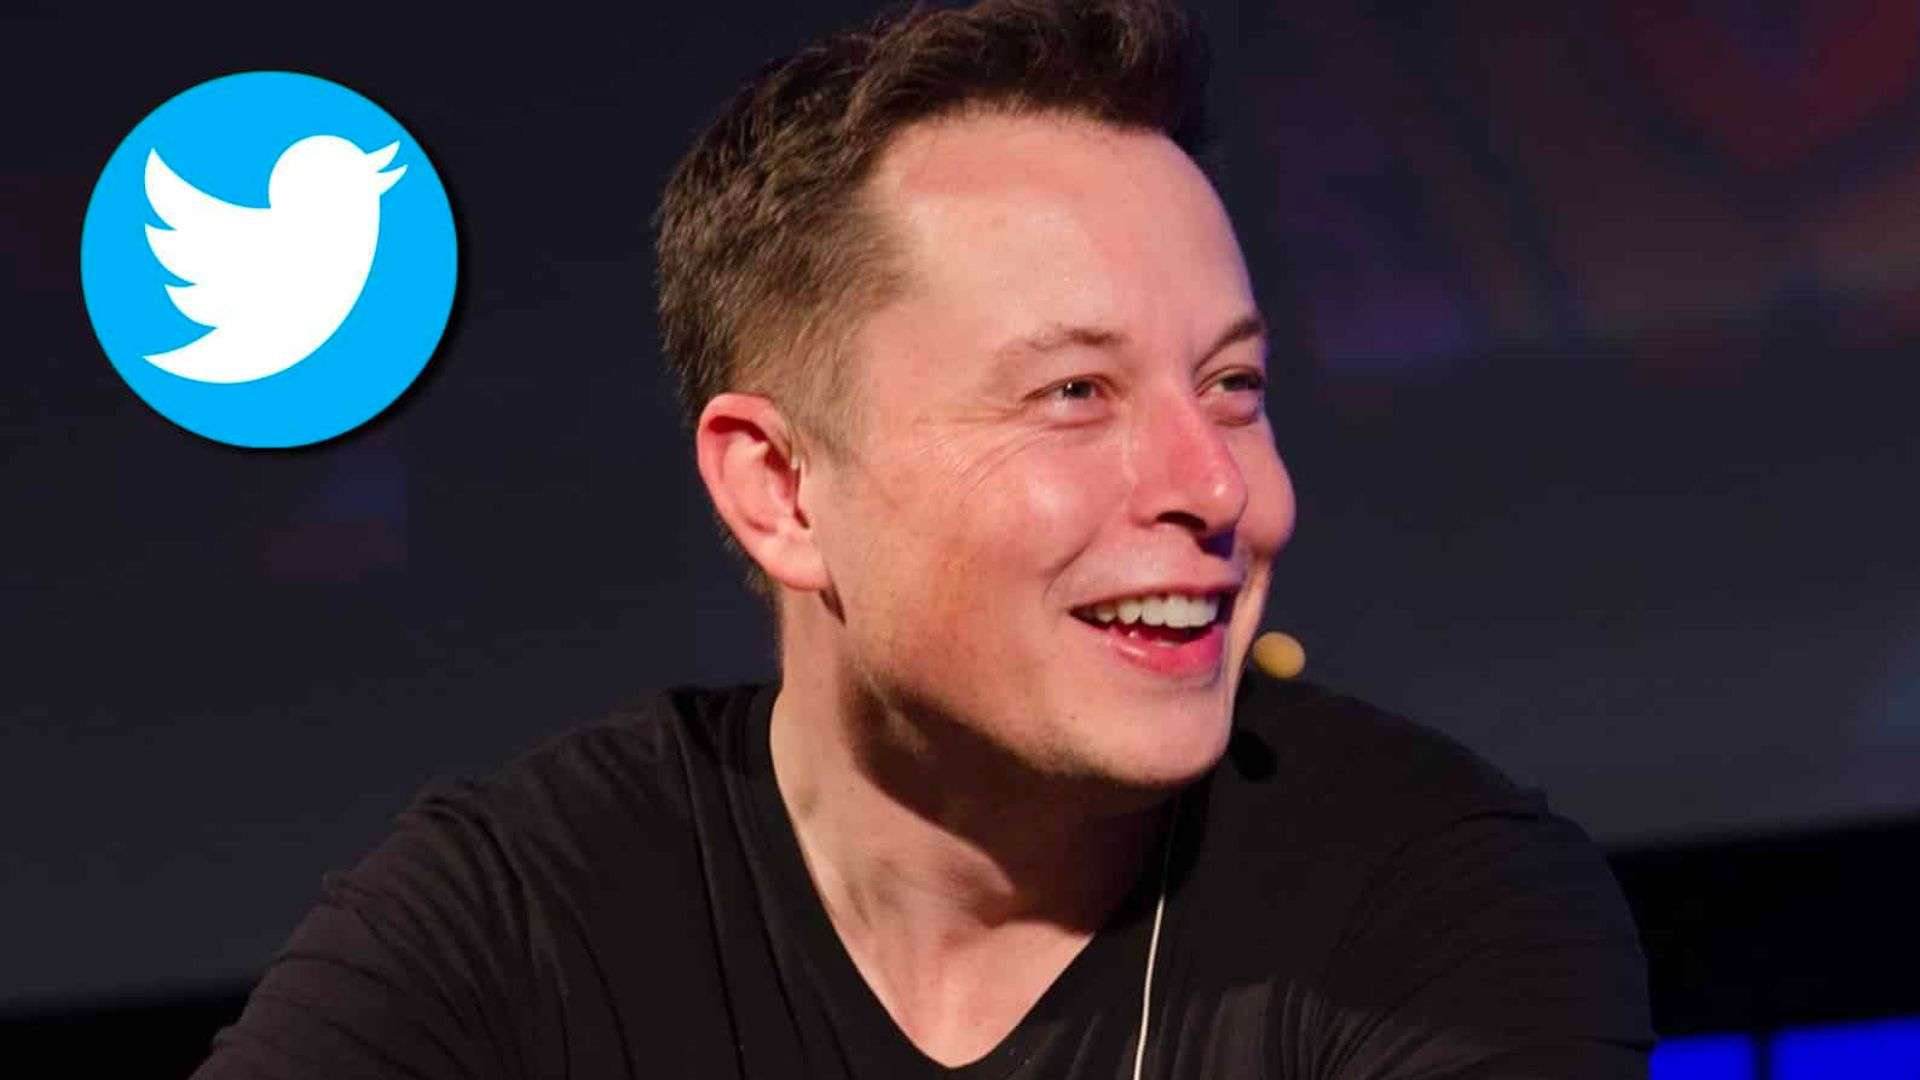 Elon Musk sat next to Twitter logo